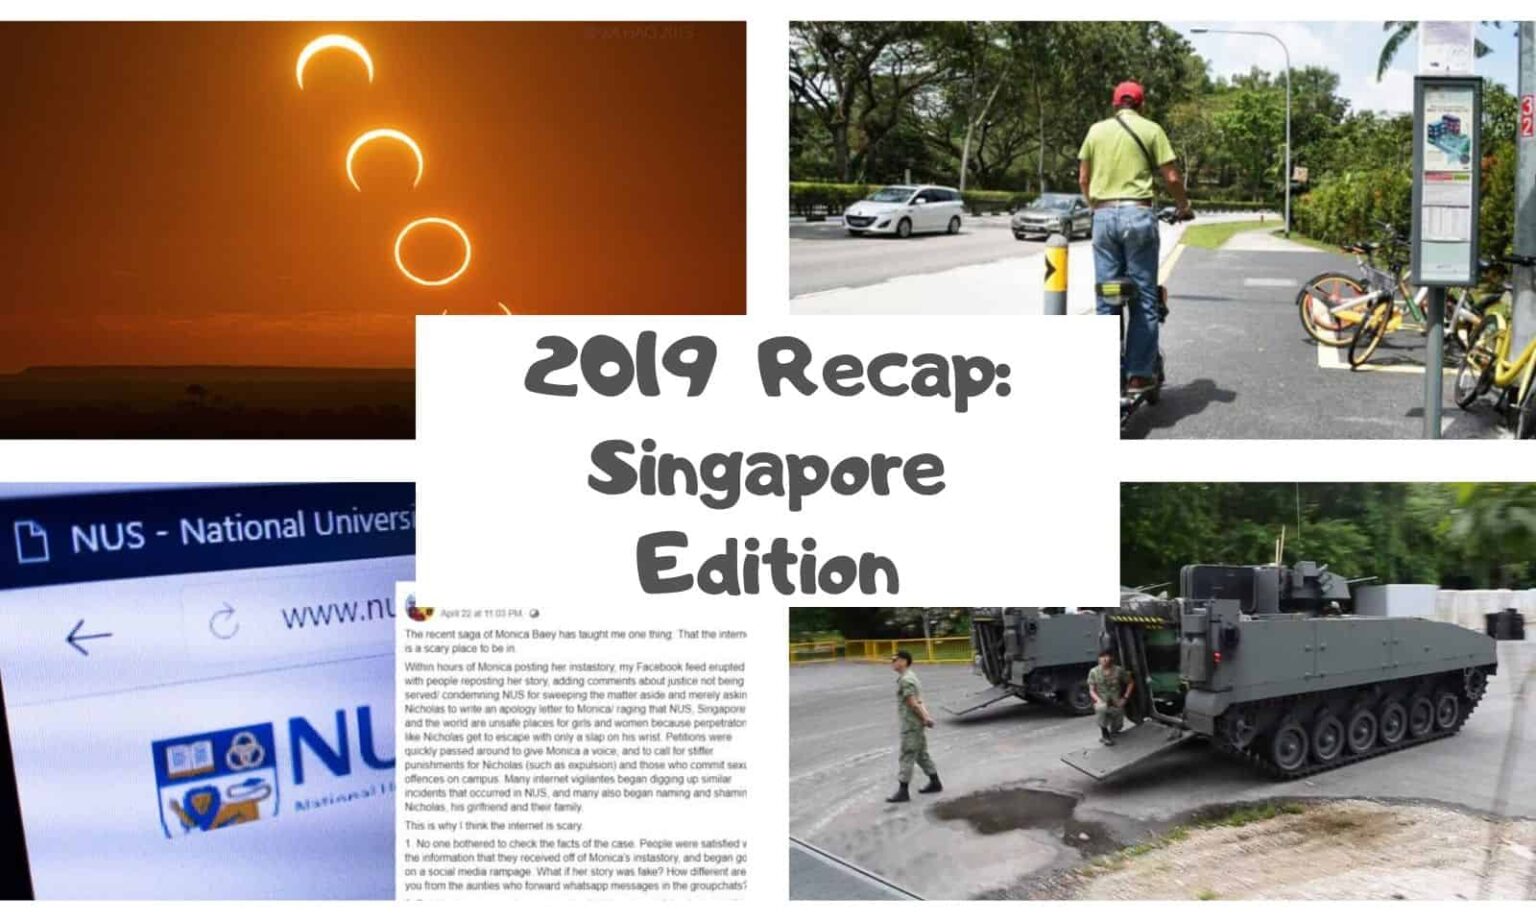 2019 Recap Singapore Cover Image